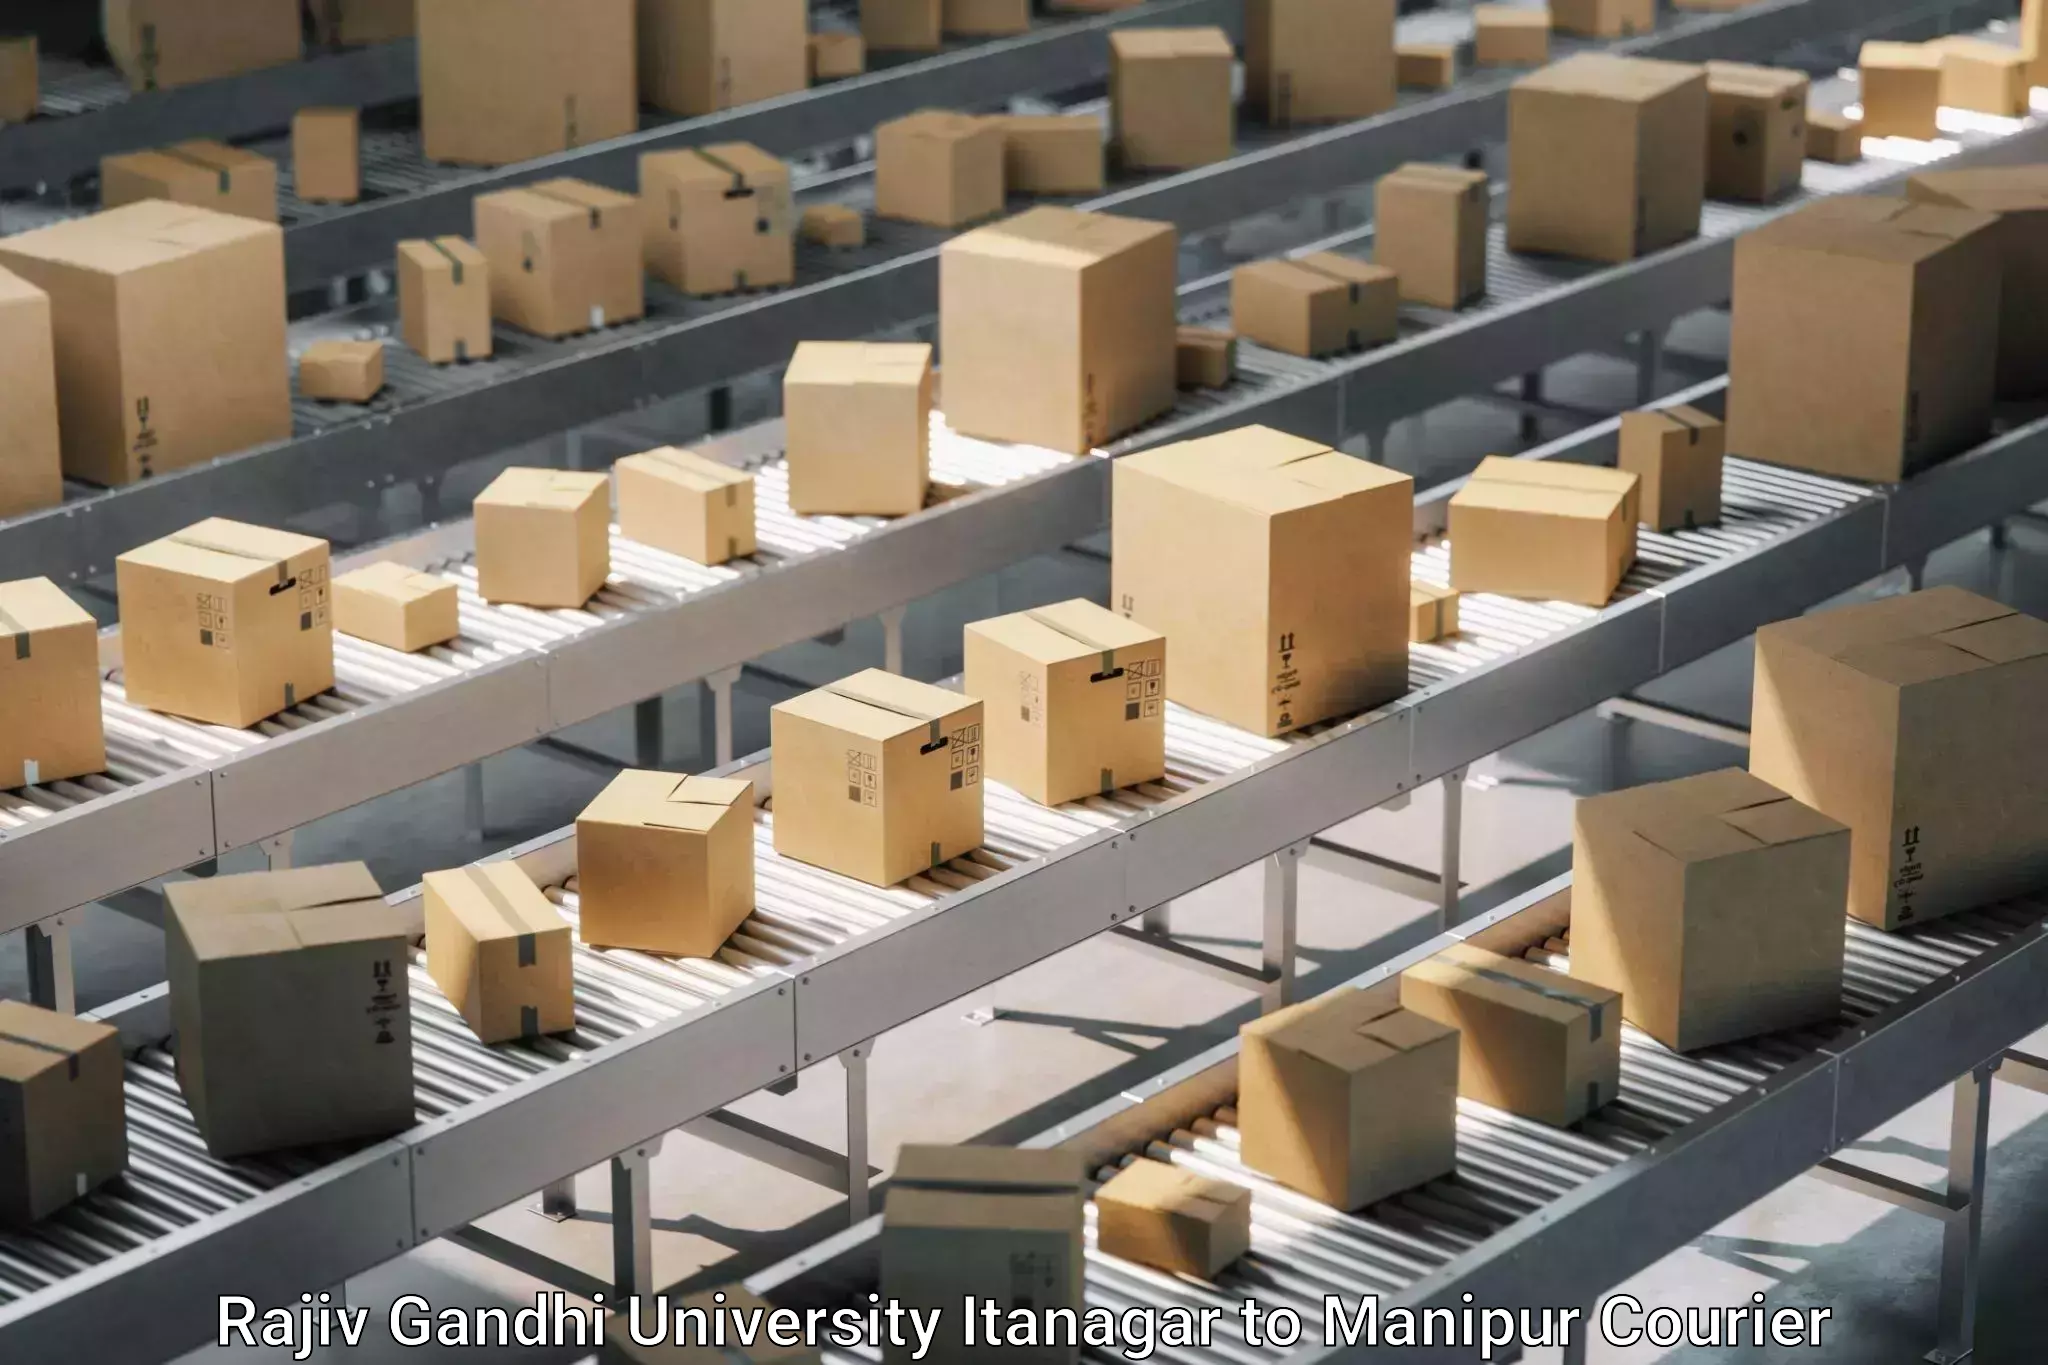 Household moving experts in Rajiv Gandhi University Itanagar to Imphal